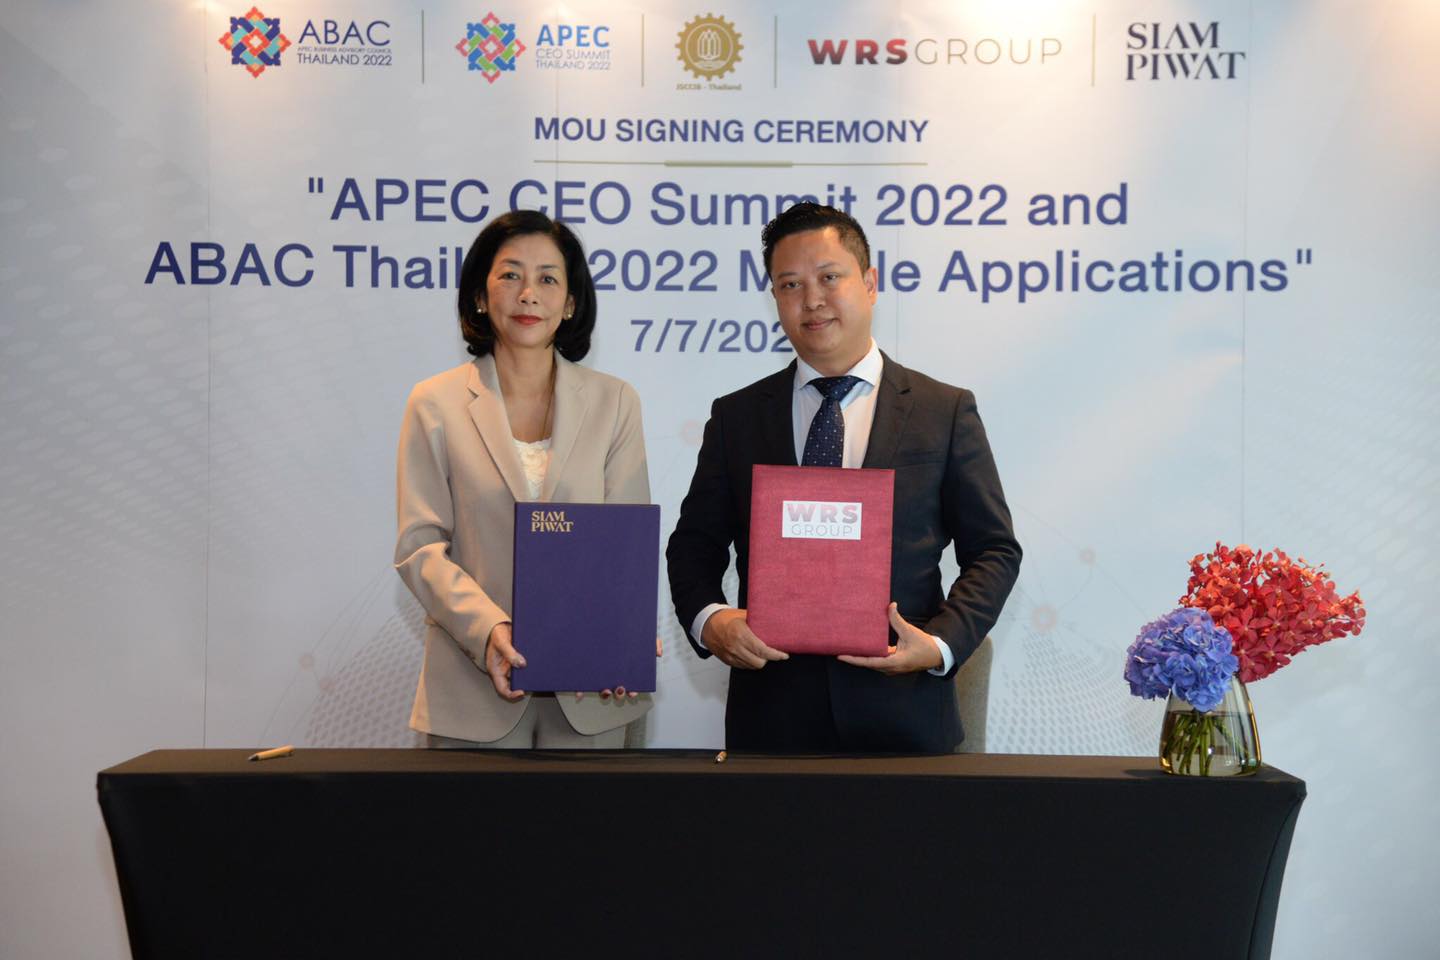 WRS x Siam Piwat for APEC